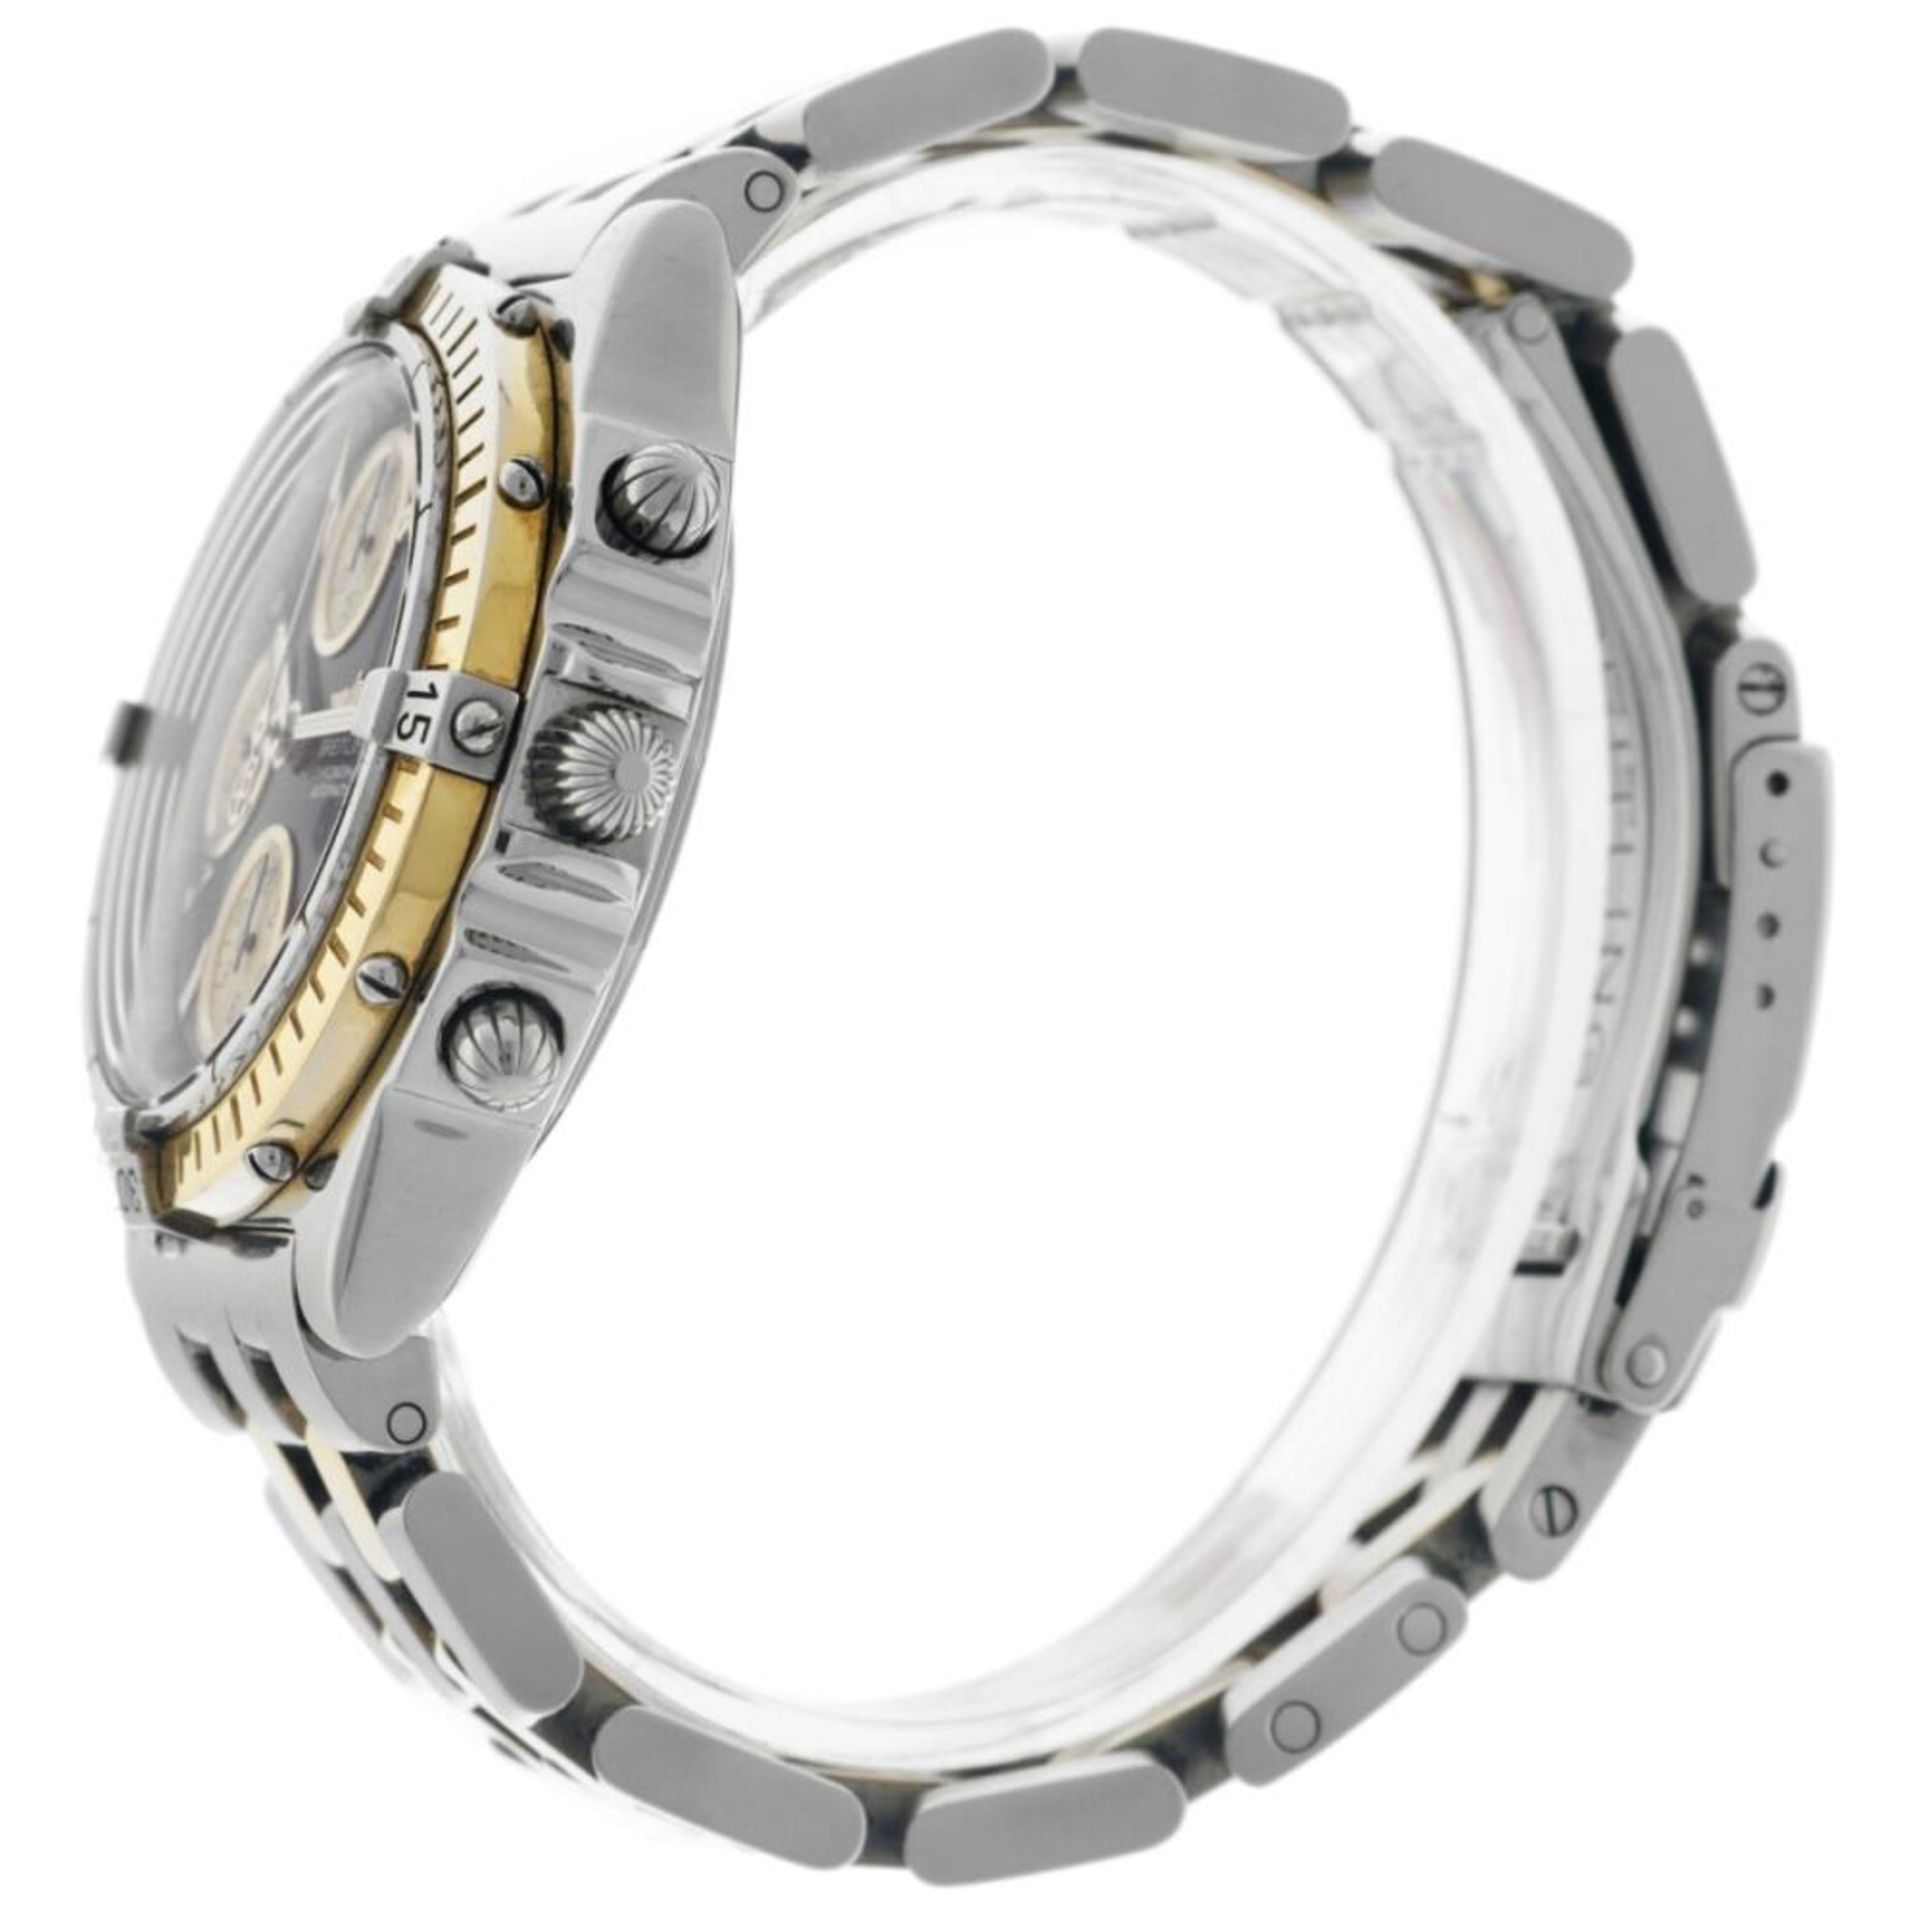 Breitling Chronomat D13350 - Men's watch - 2000. - Image 5 of 6